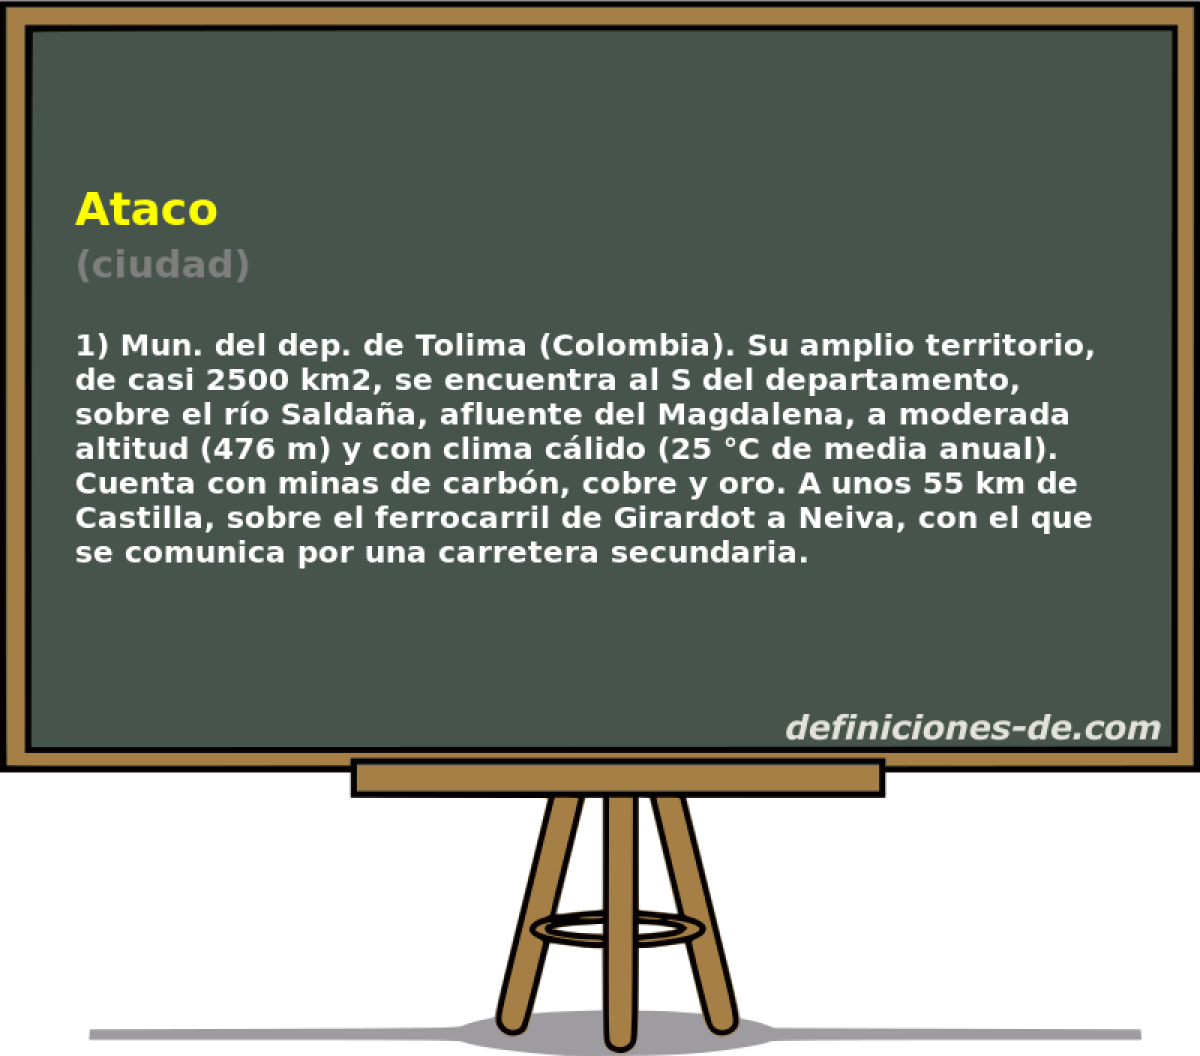 Ataco (ciudad)